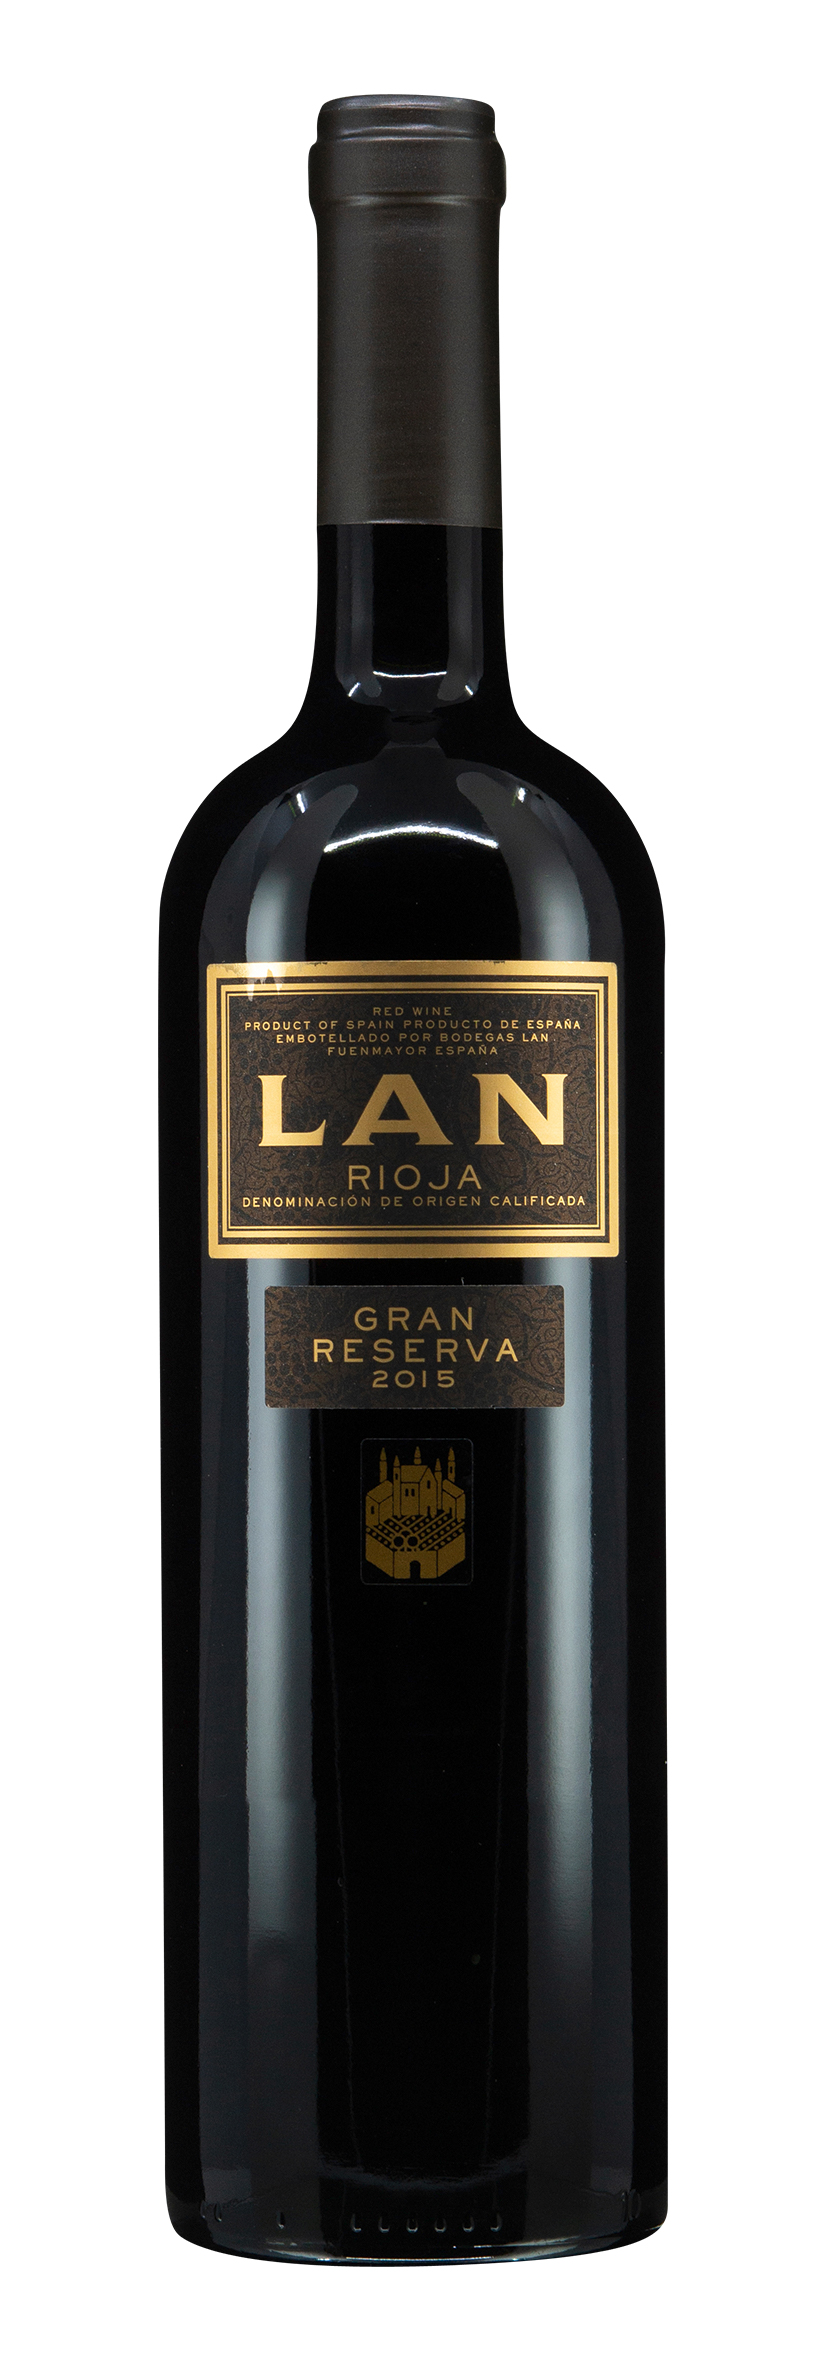 Rioja DOCa Gran Reserva 2015